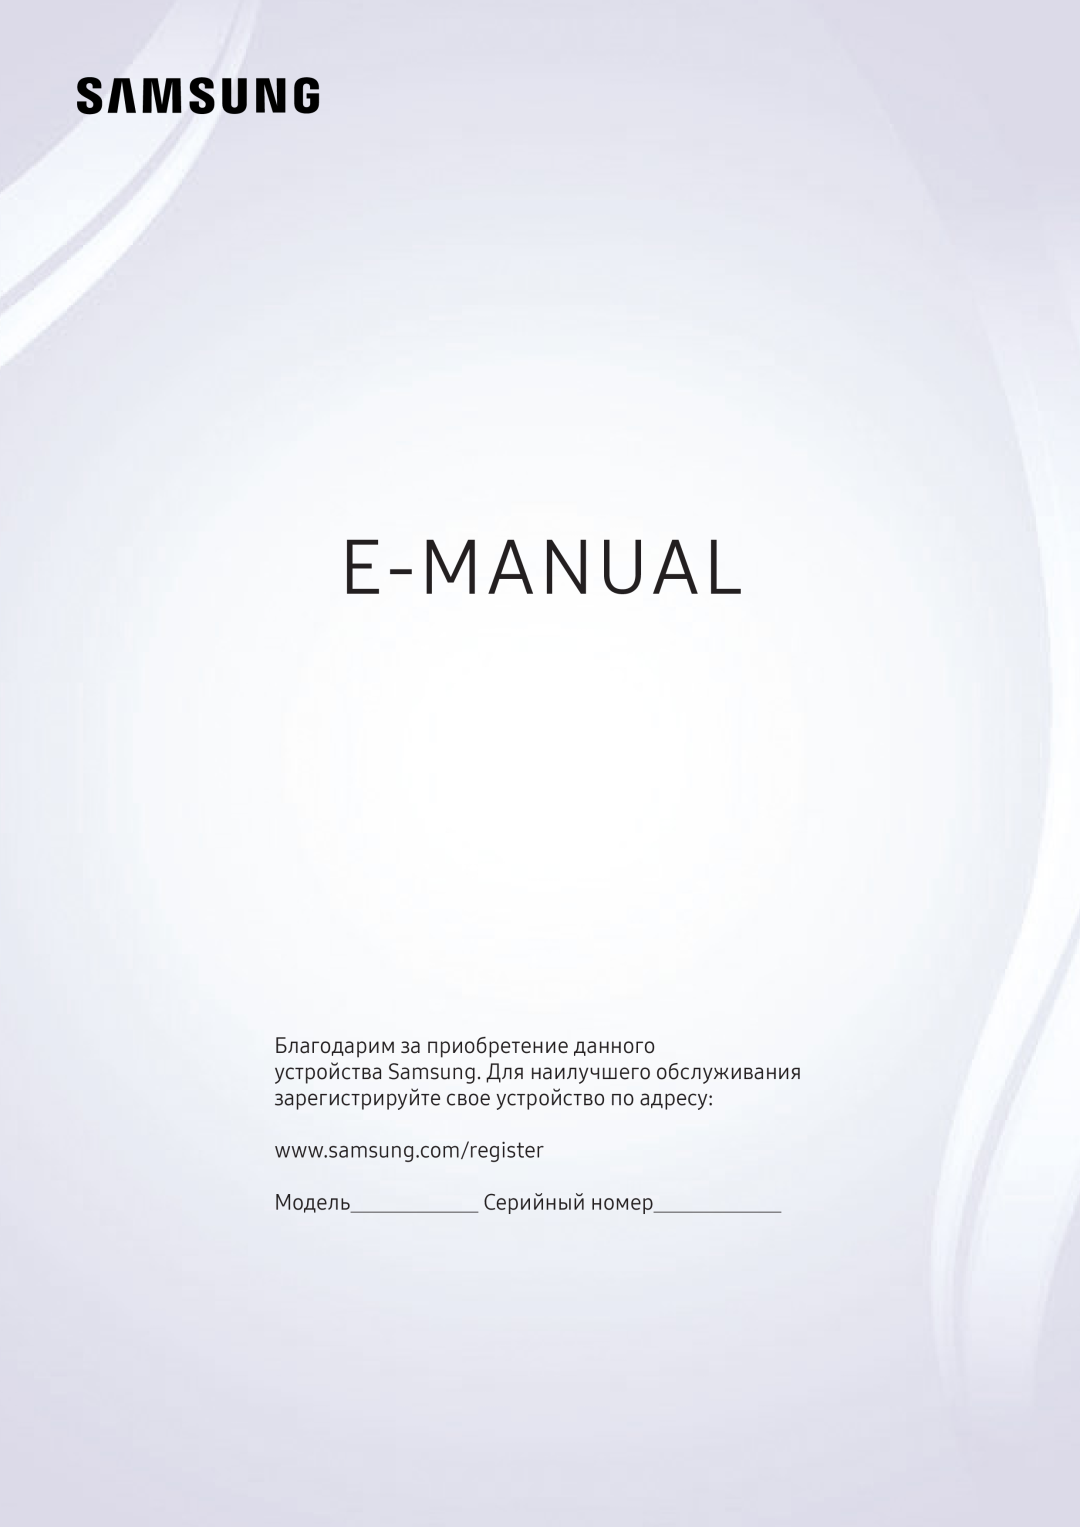 Samsung UE49KS7090UXZG, UE43KS7590UXZG manual E-Manual, Köszönjük, hogy Samsung terméket vásárolt, ModellSorozatszám 